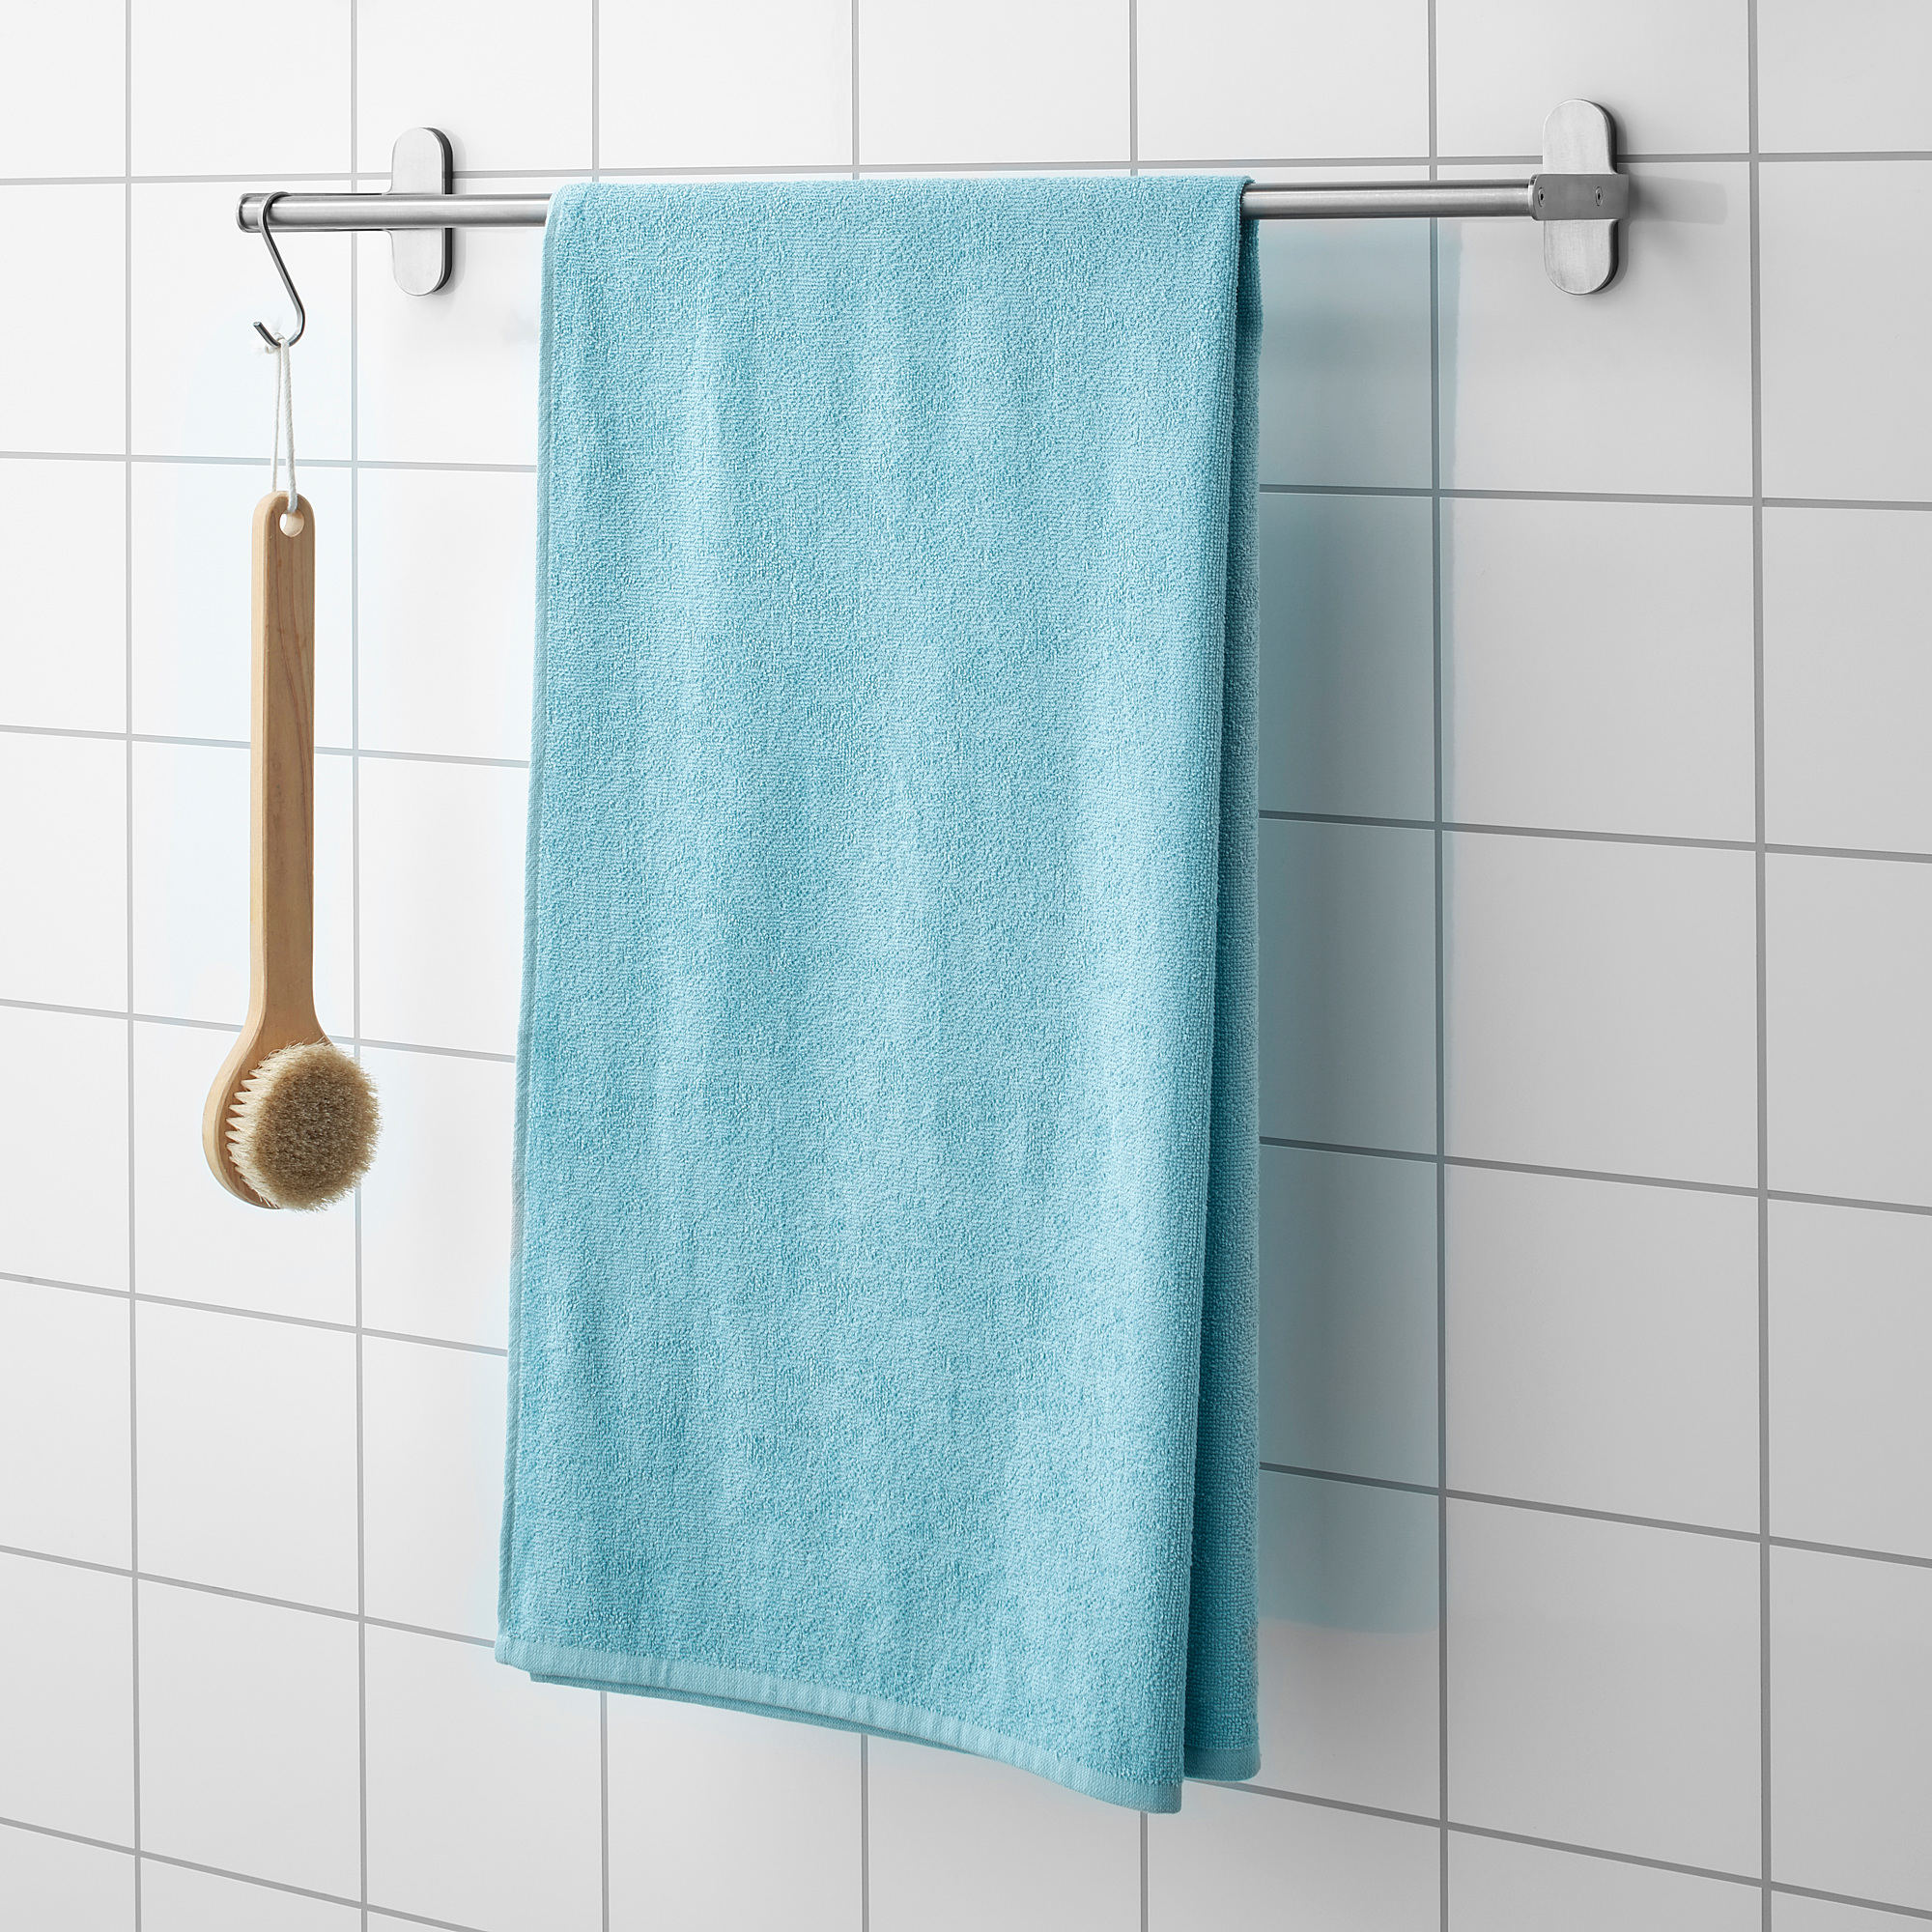 aqua blue bath towels